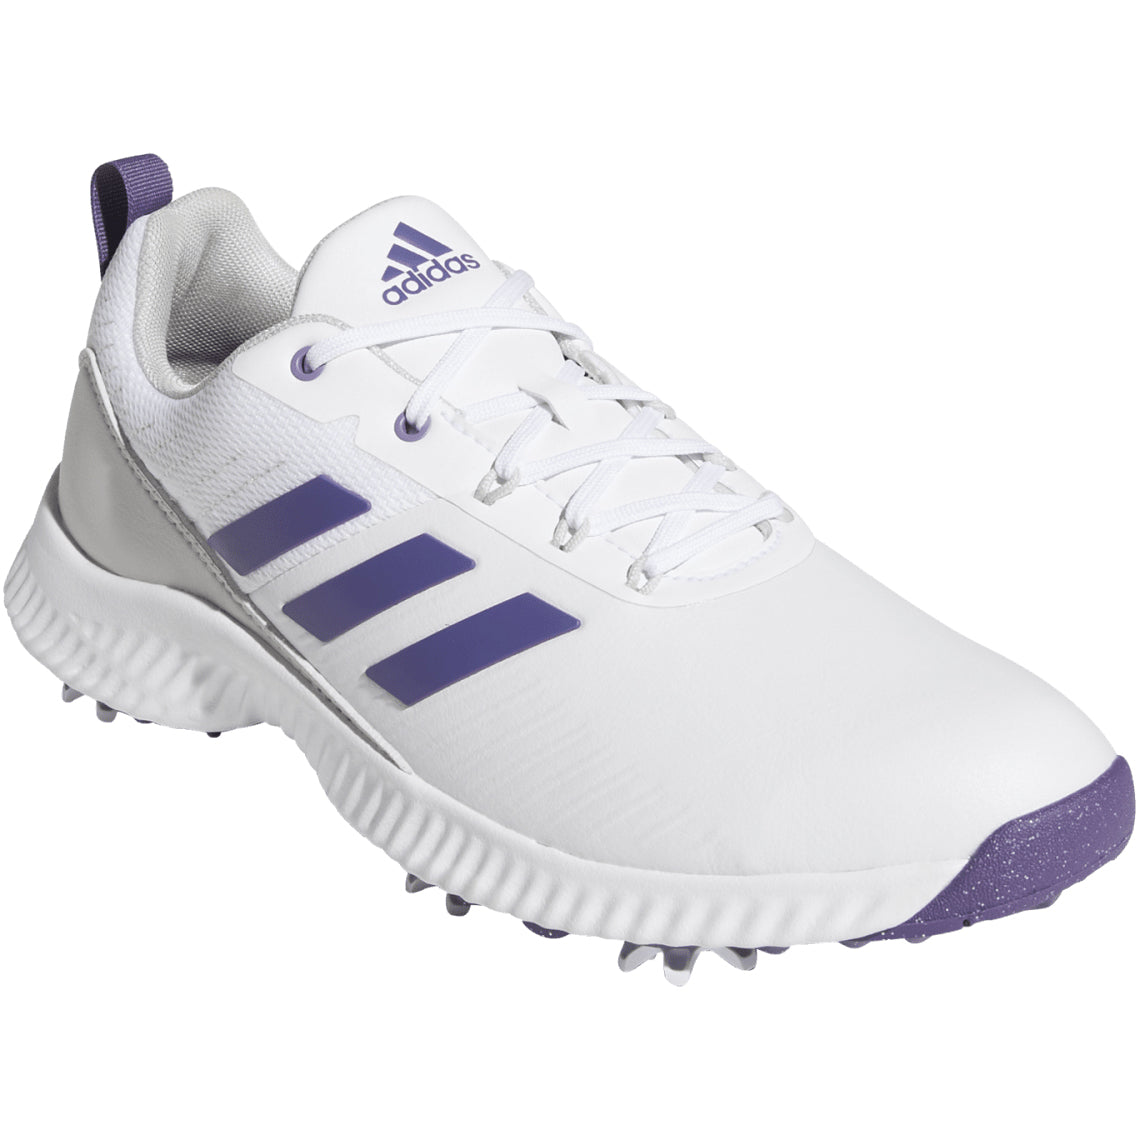 White/Tech Purple/Grey One